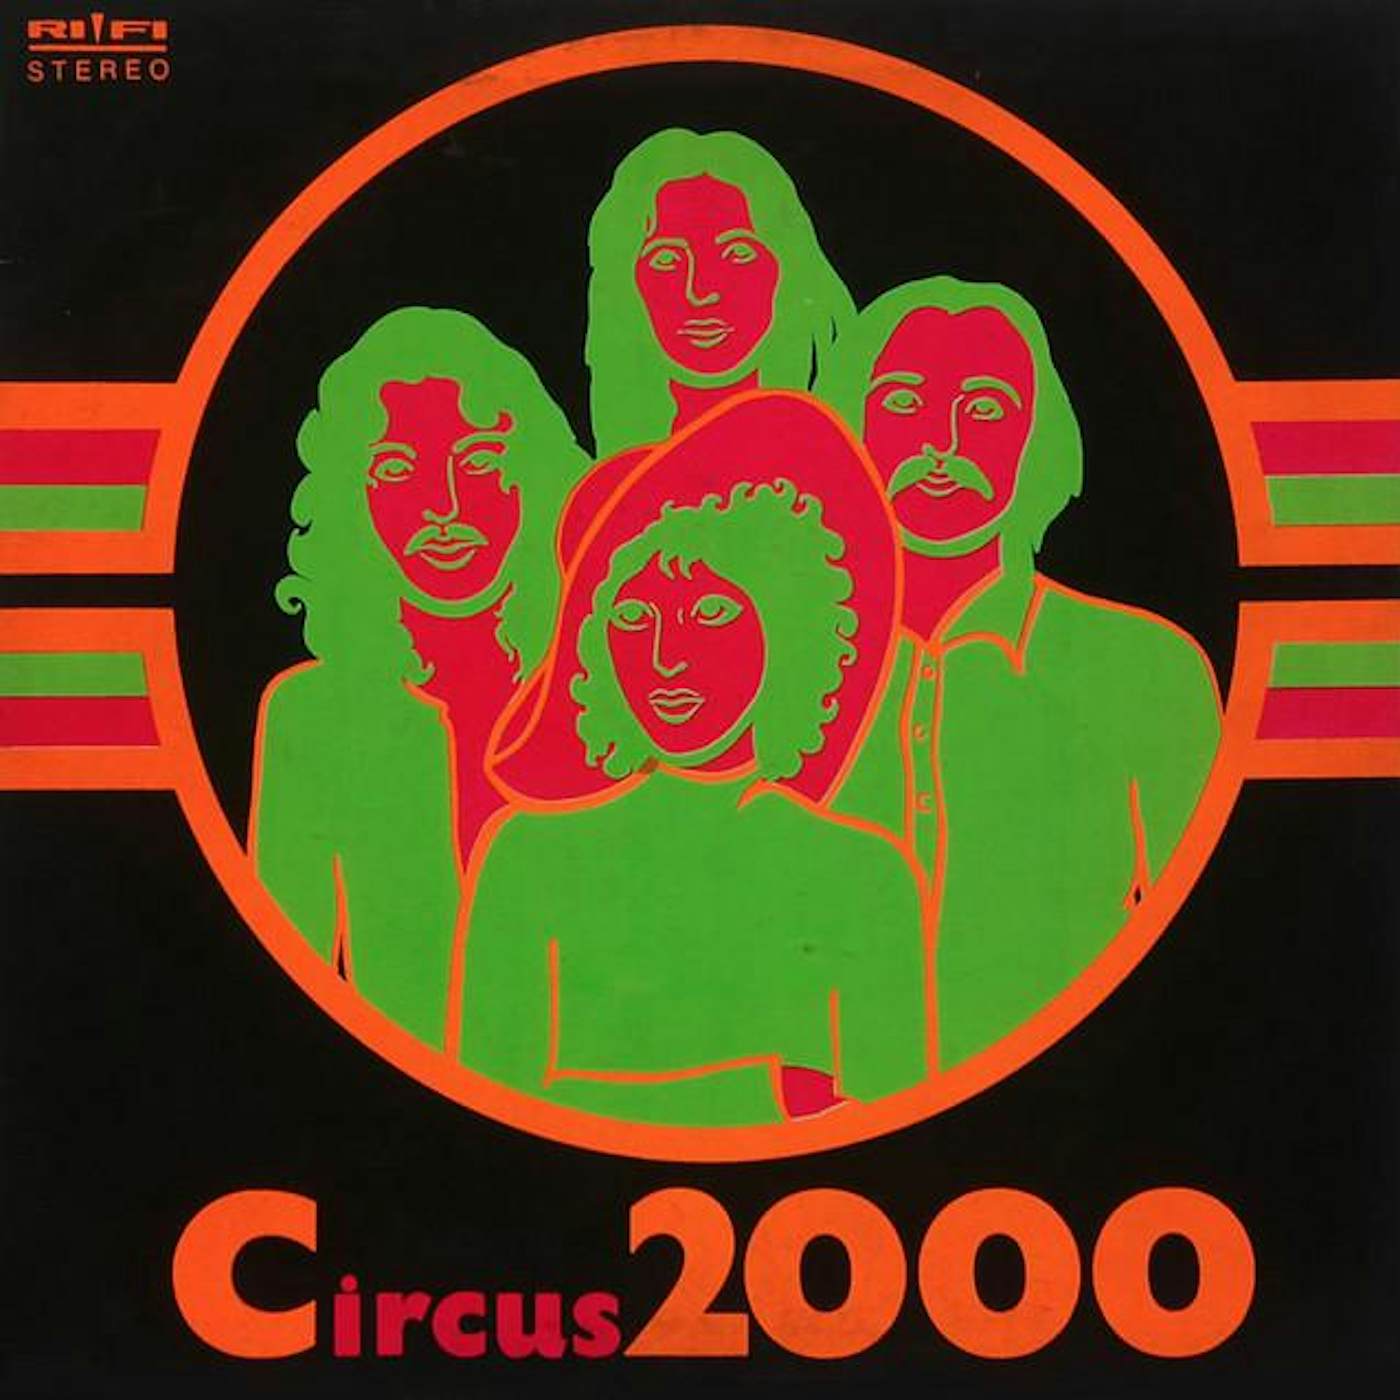 Circus 2000